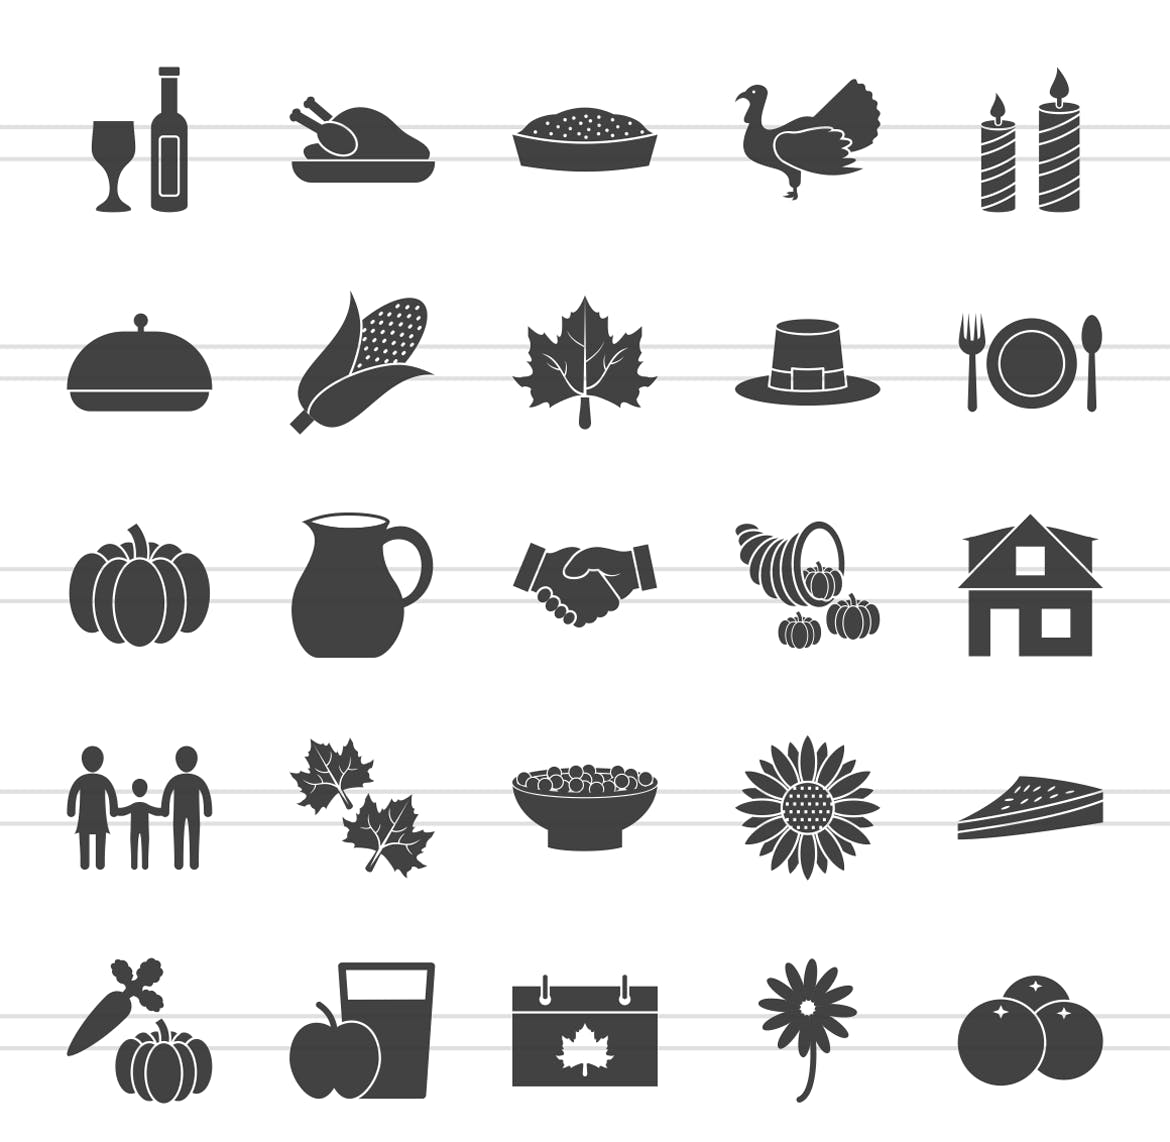 50枚感恩节主题矢量字体第一素材精选图标 50 Thanksgiving Glyph Icons插图(1)